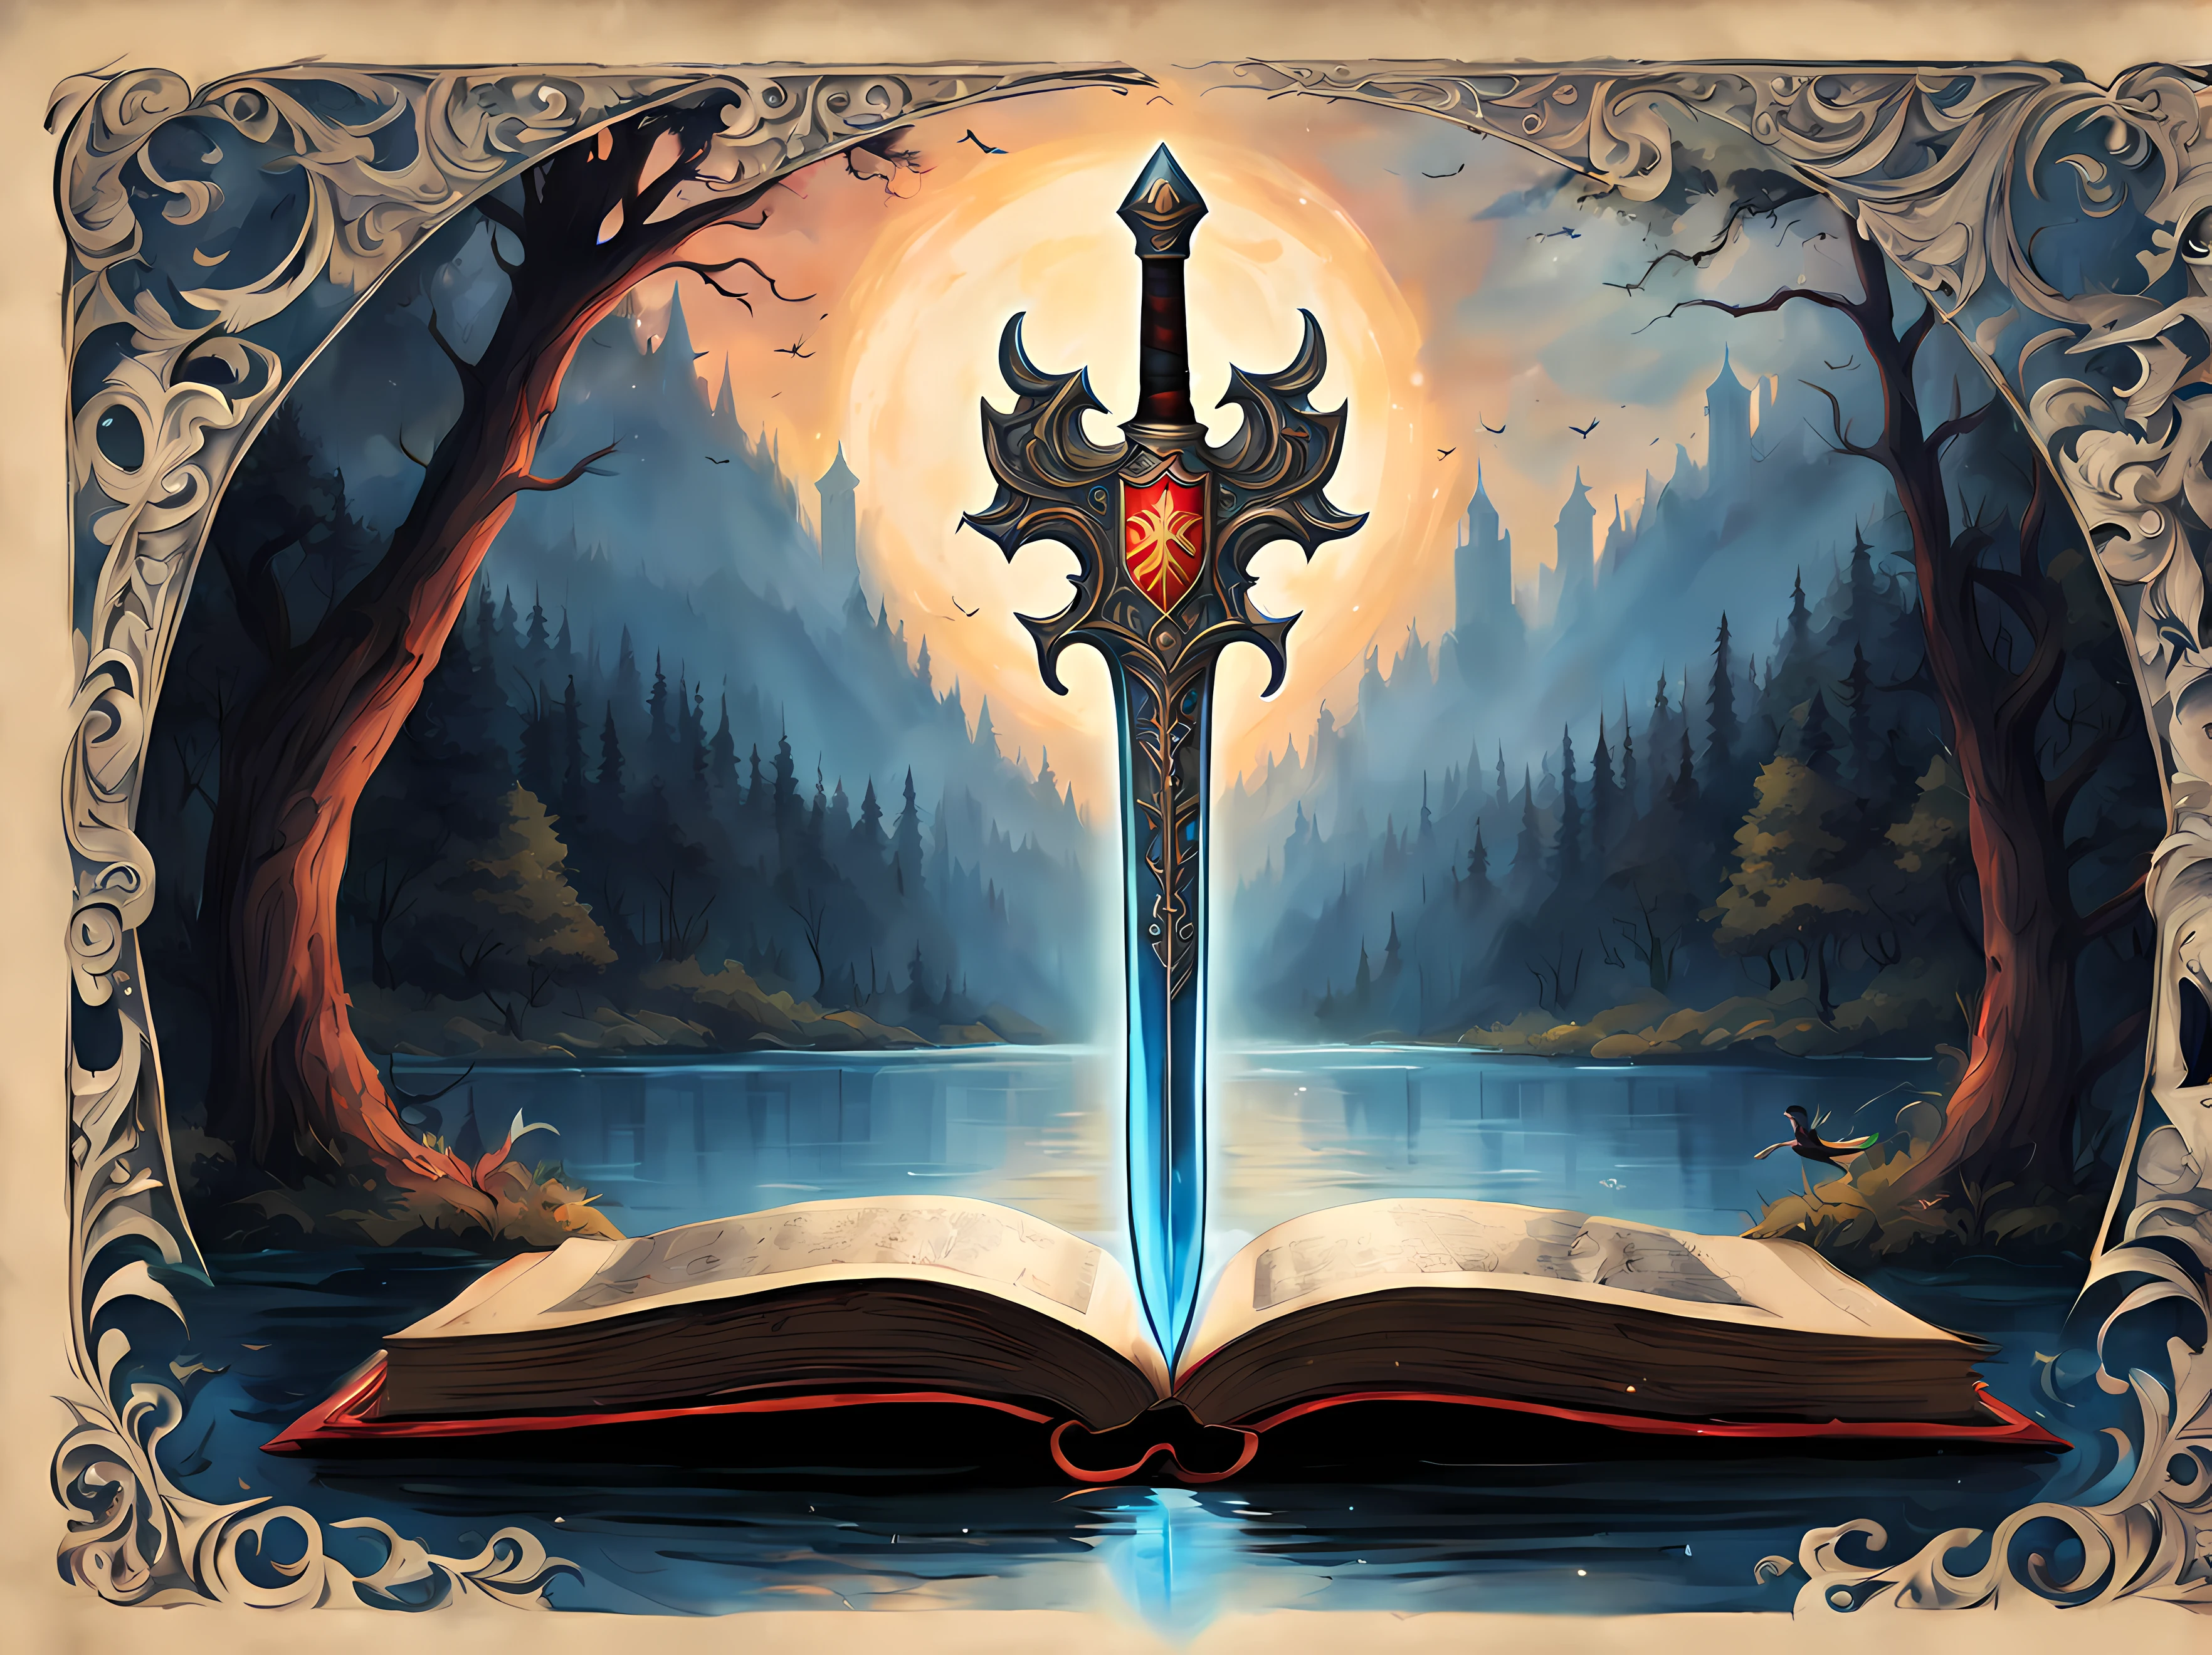 linda caricatura, lindodibujos animadosAF, (lindo estilo de dibujos animados:1.3), (En la página de un libro antiguo con adornos góticos.:1.3). | ((Vista lejana de la legendaria espada y escudo flotando.)) encima de un lago, rodeado de un bosque alto. | La espada tiene un aura divina y cautivadora., brillando con una suave luz azul. | ((El escudo tiene una imagen de fénix.)), brillando con una suave luz roja. | más_detalle